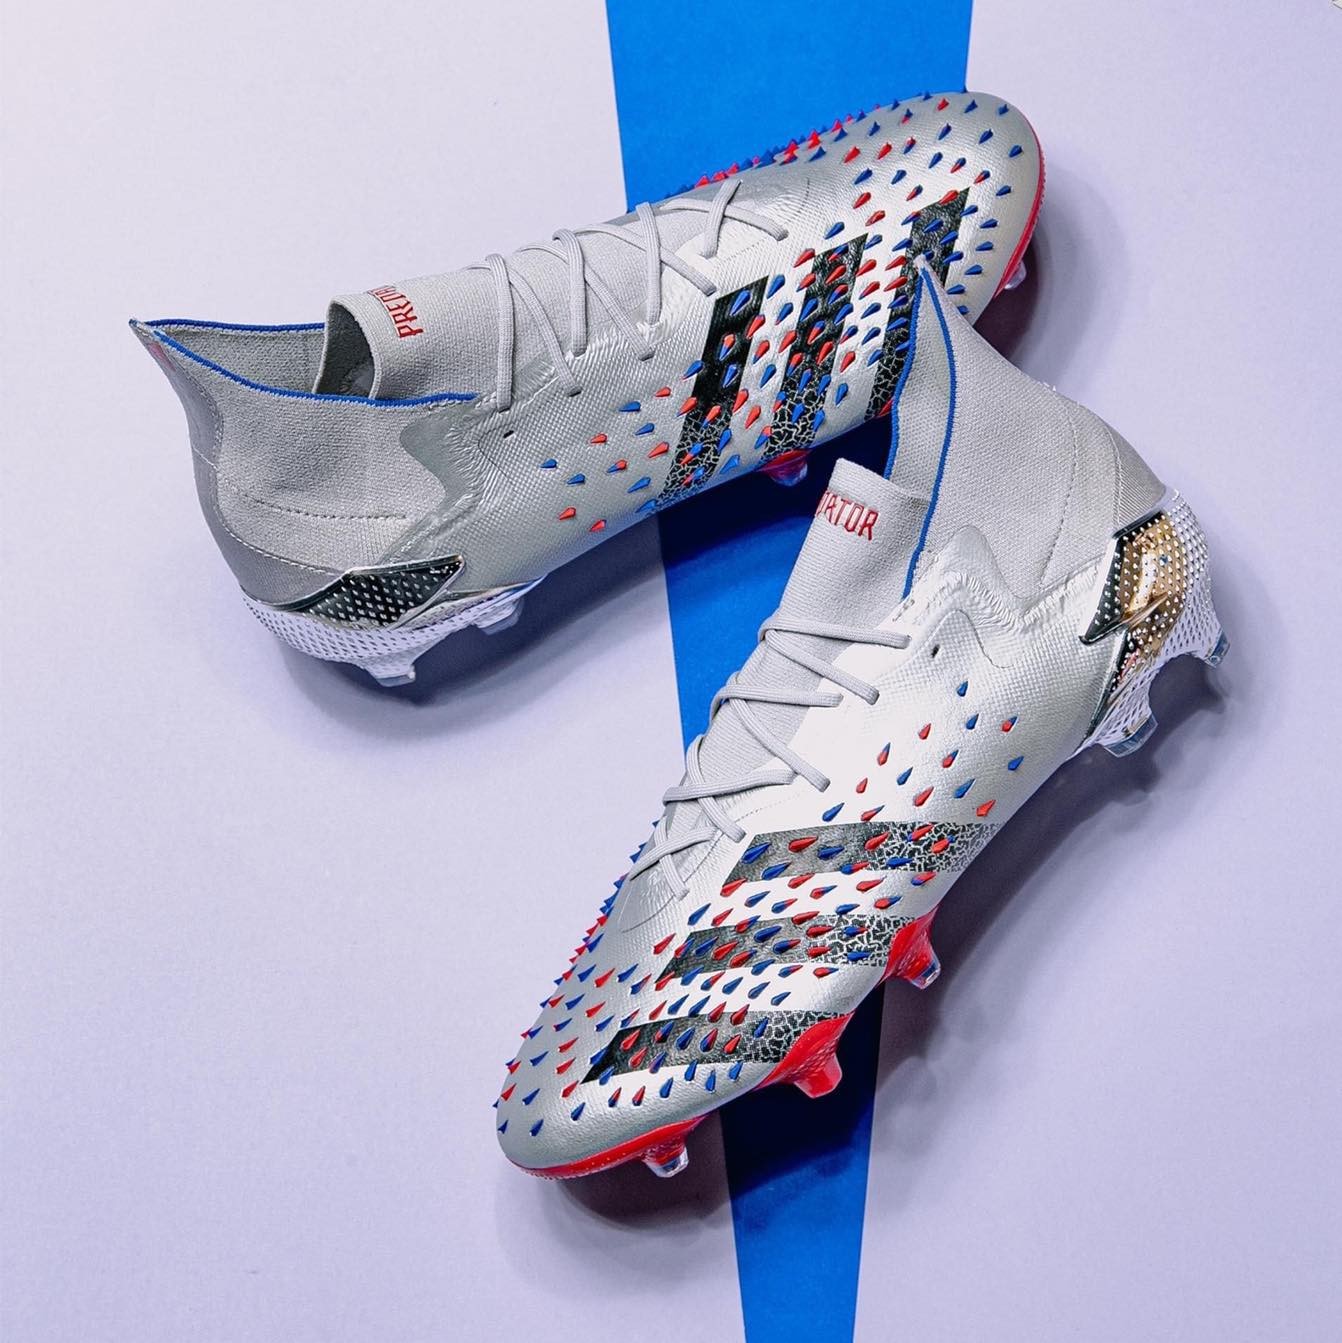 Tiền vệ Paul Pogba mang giày đá bóng adidas Predator Showpiece Pack